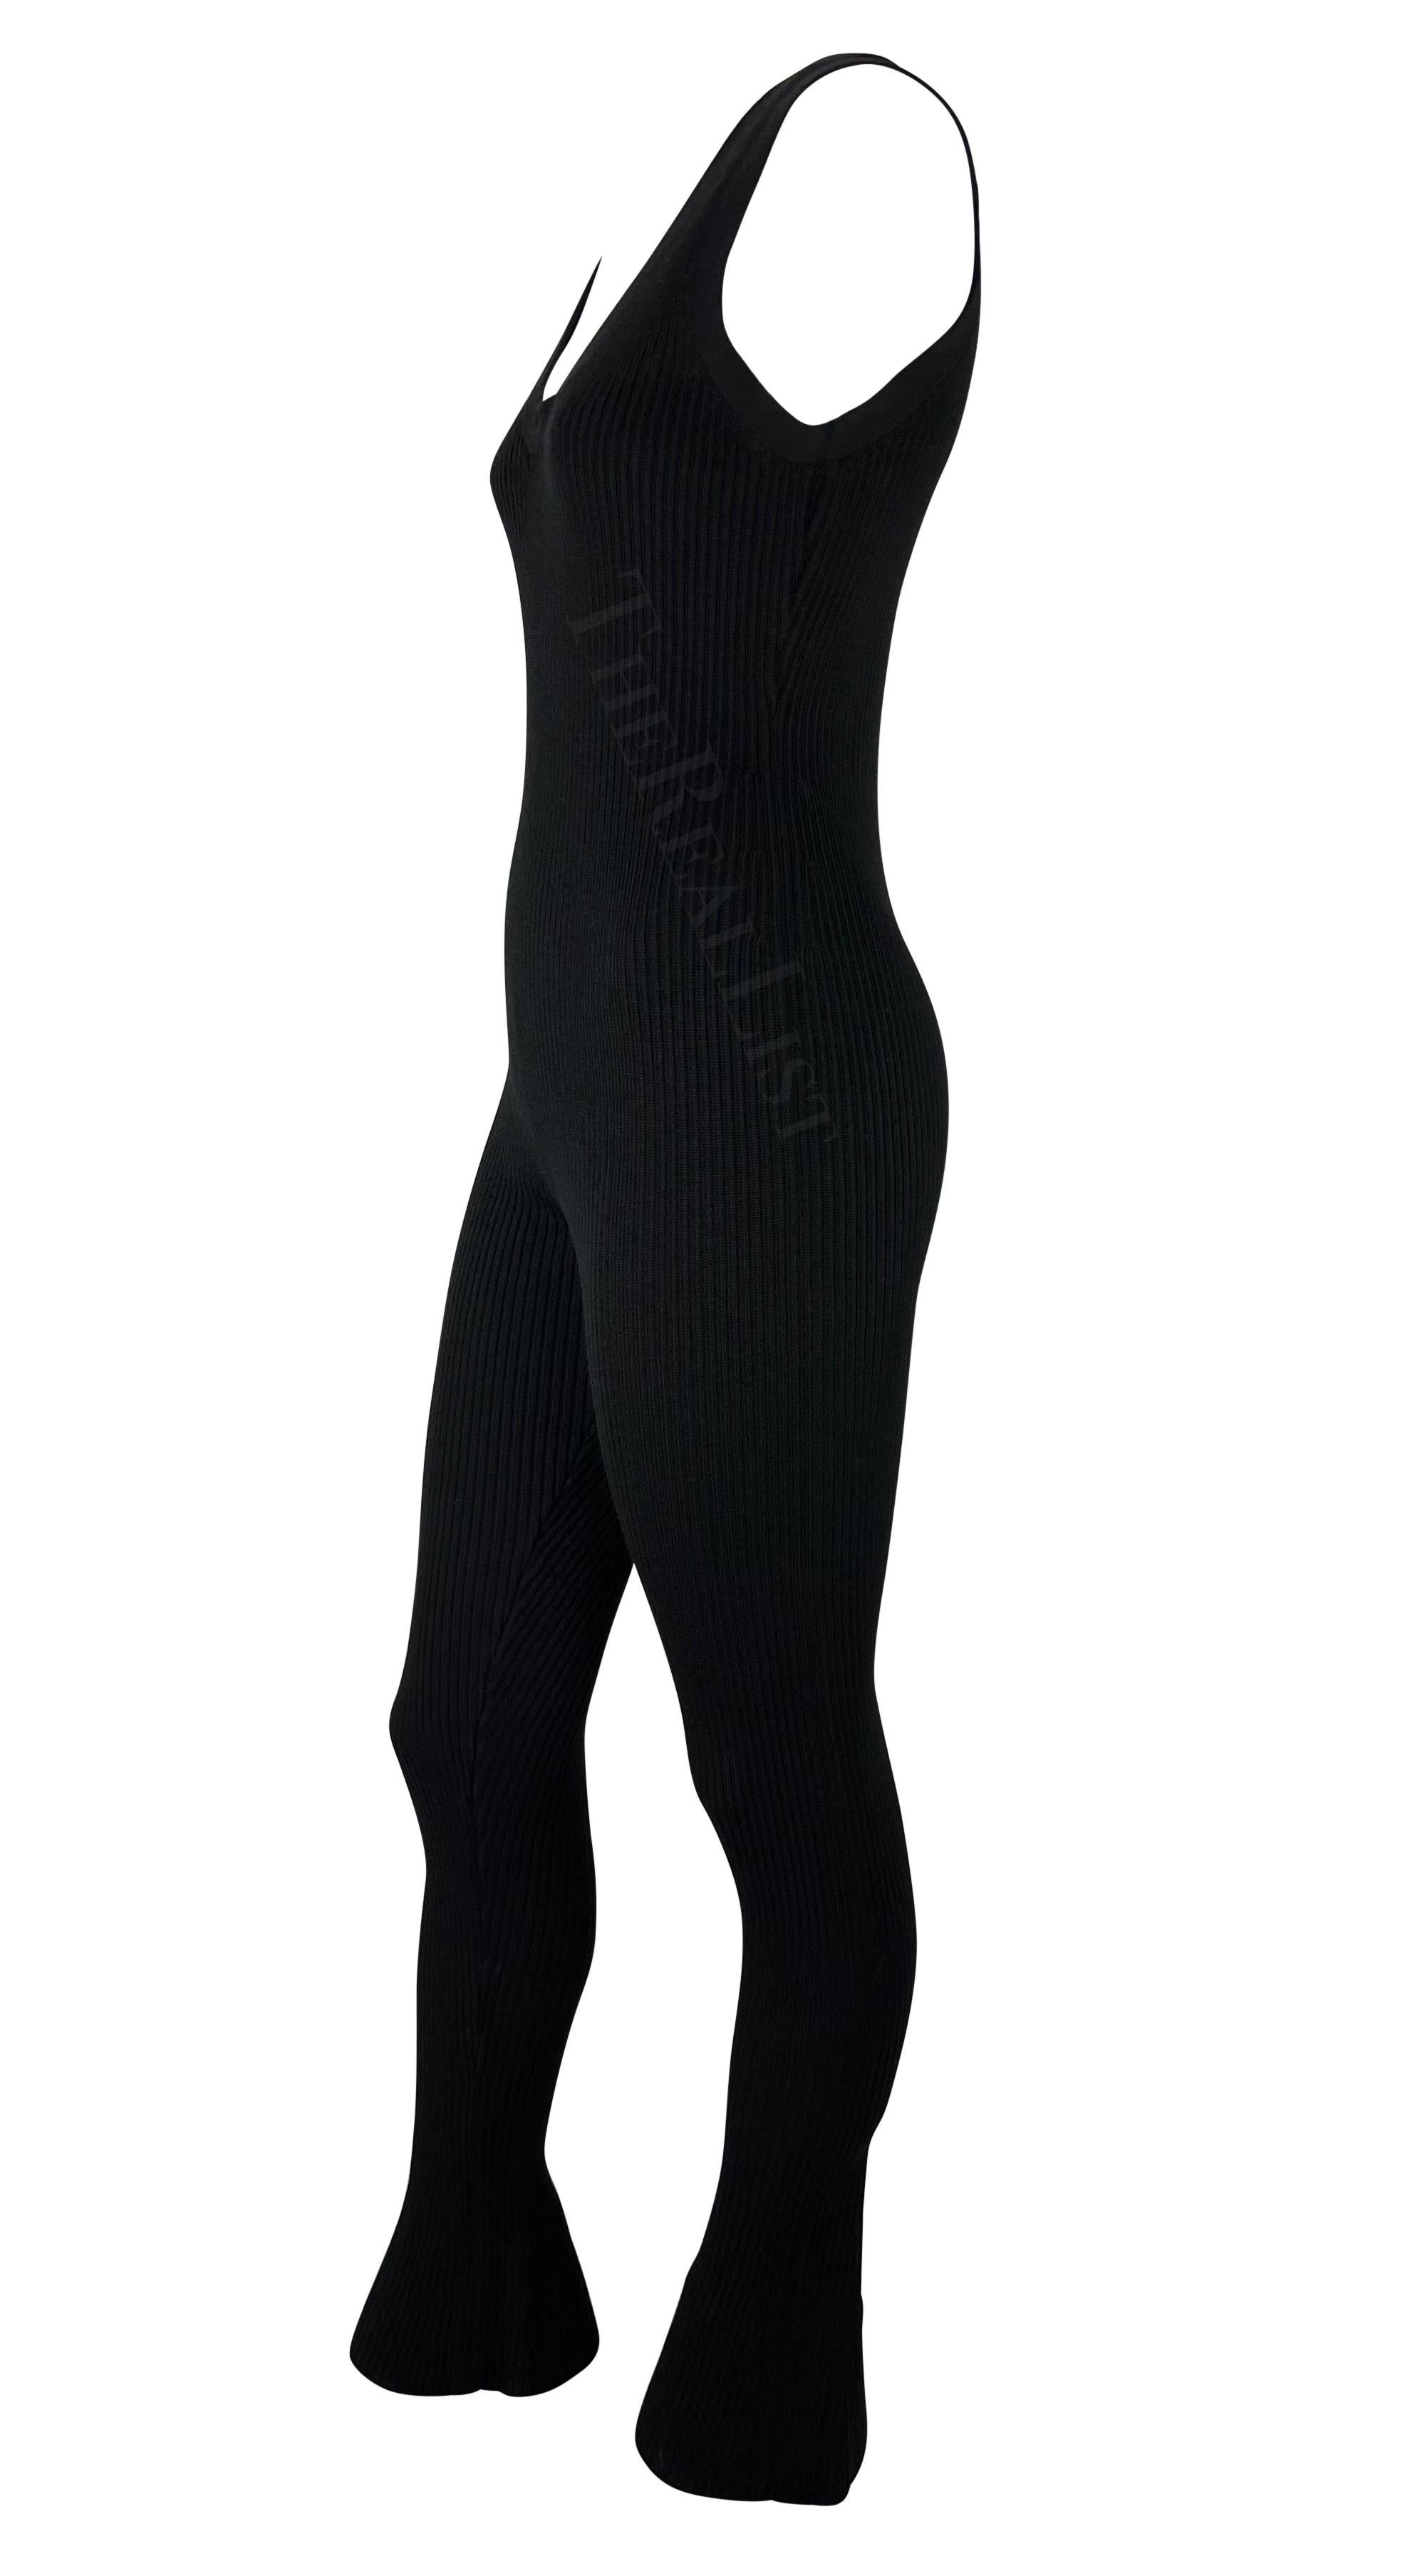 Voici un fabuleux body Prada en maille noire, dessiné par Miuccia Prada. Datant du début des années 2000, ce fabuleux catsuit est entièrement en tricot côtelé et présente une large encolure dégagée, de larges bretelles style tank et des poignets à